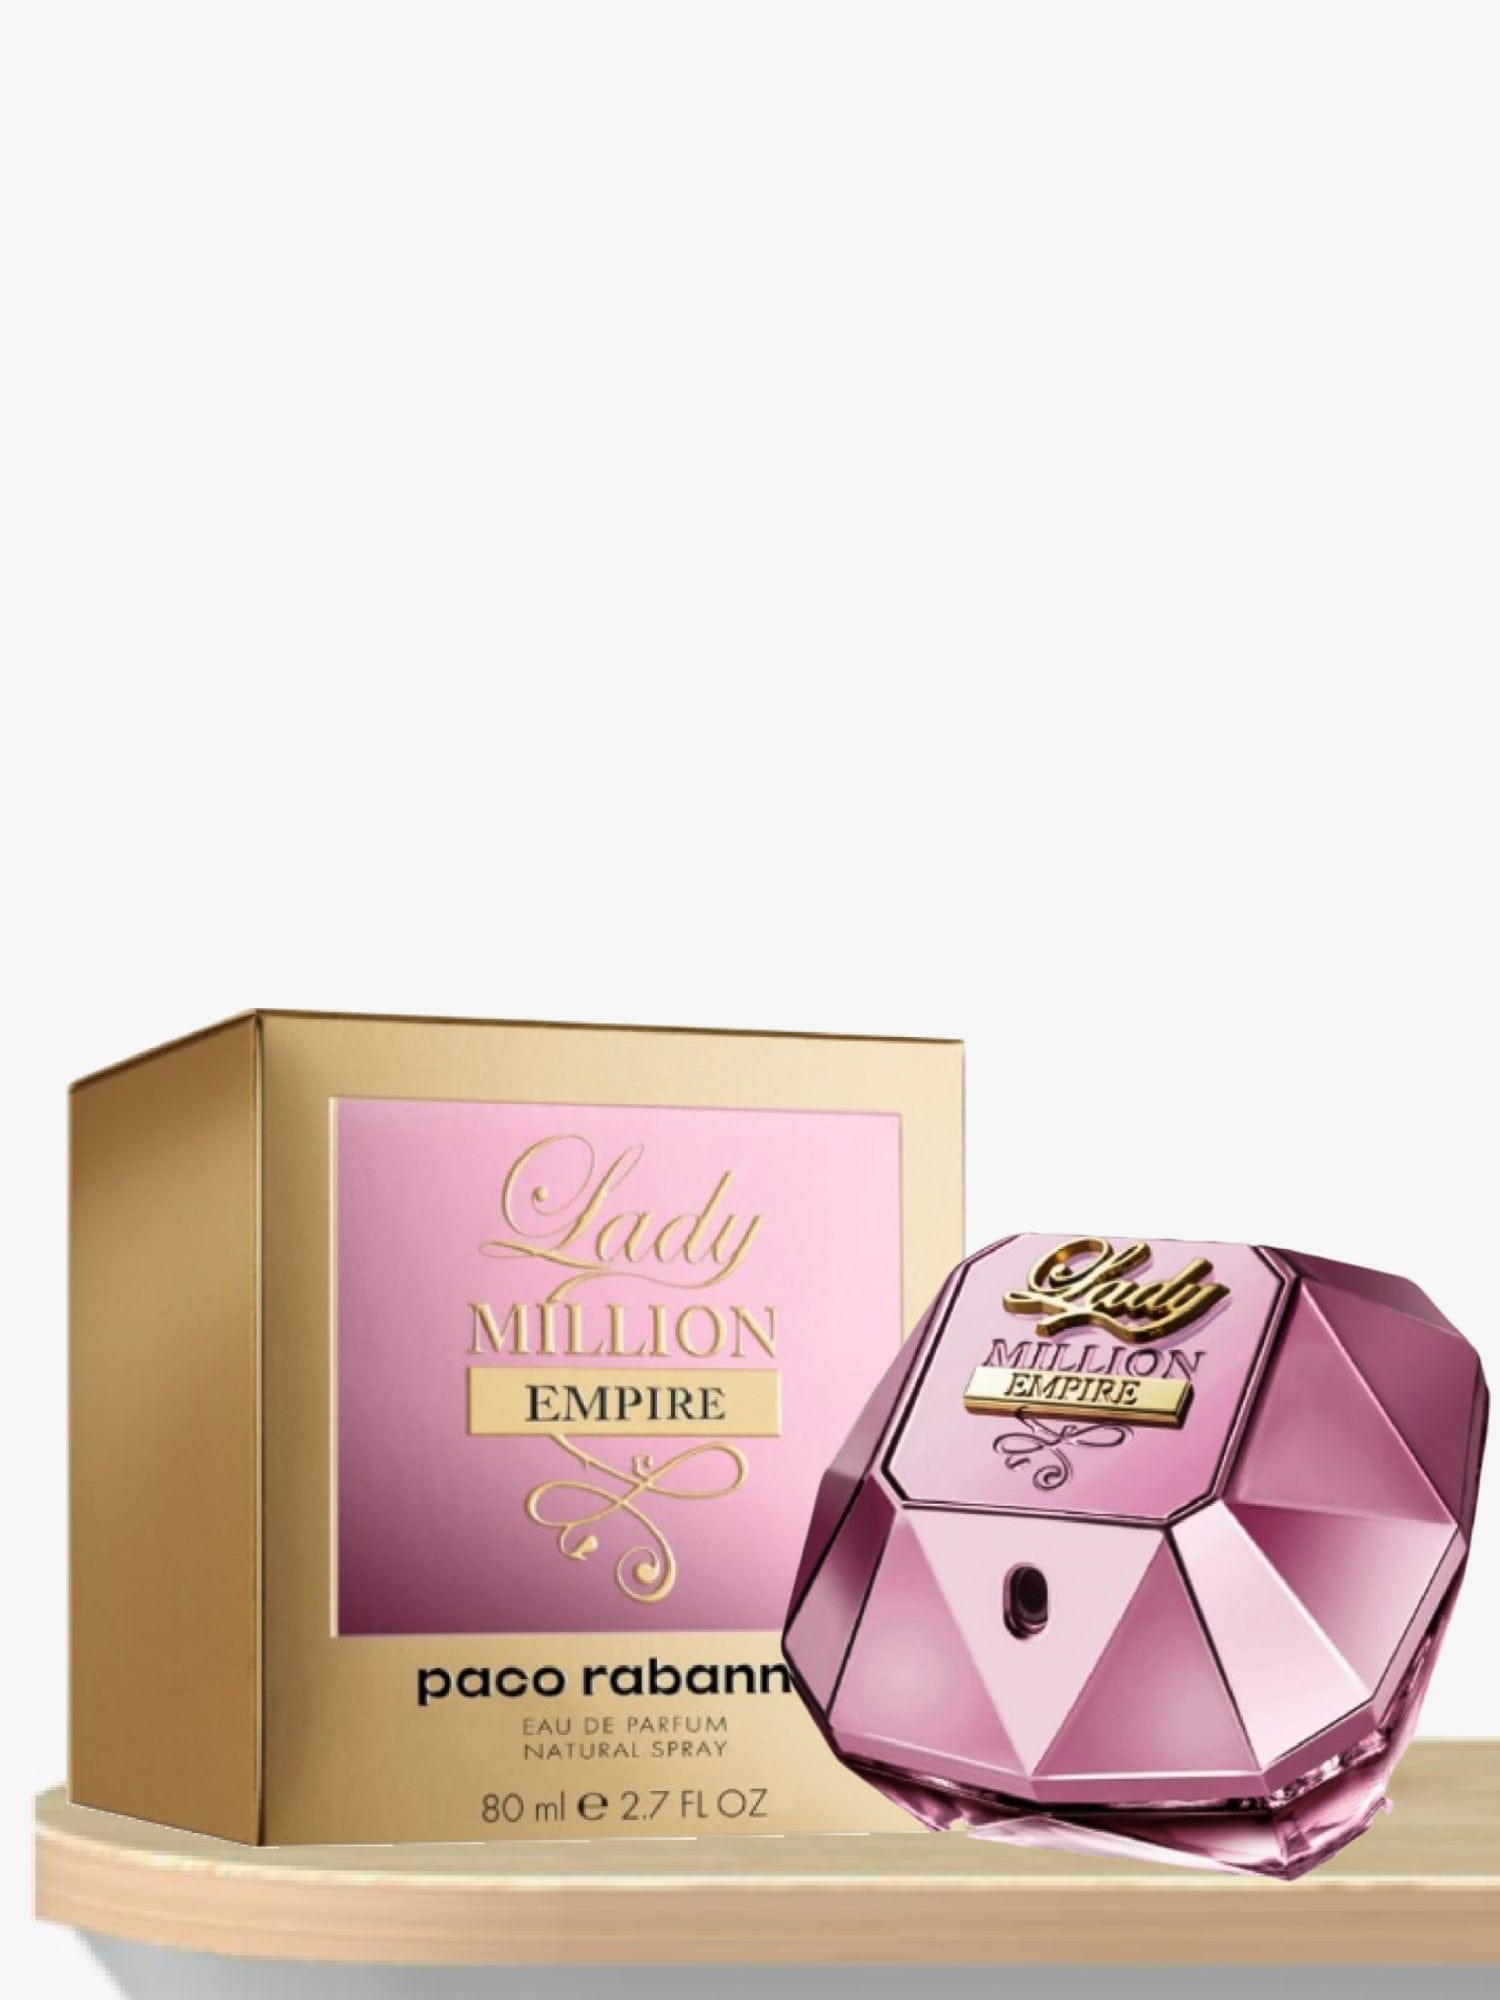 Paco Rabanne Lady Million Empire Eau de Parfum 80 mL / Female